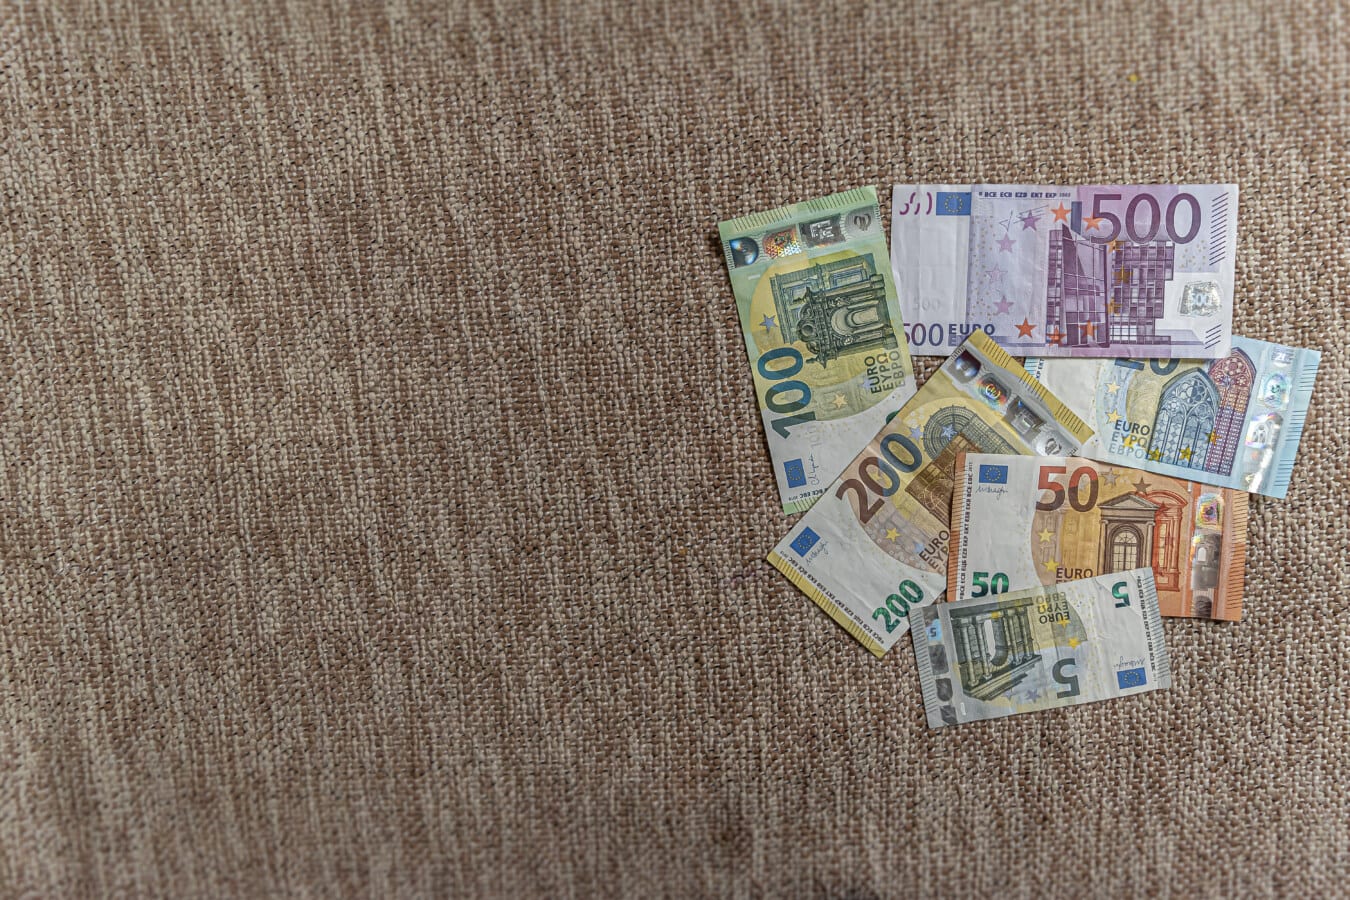 경제 성장을 보여주는 유로 (€) 지폐 더미